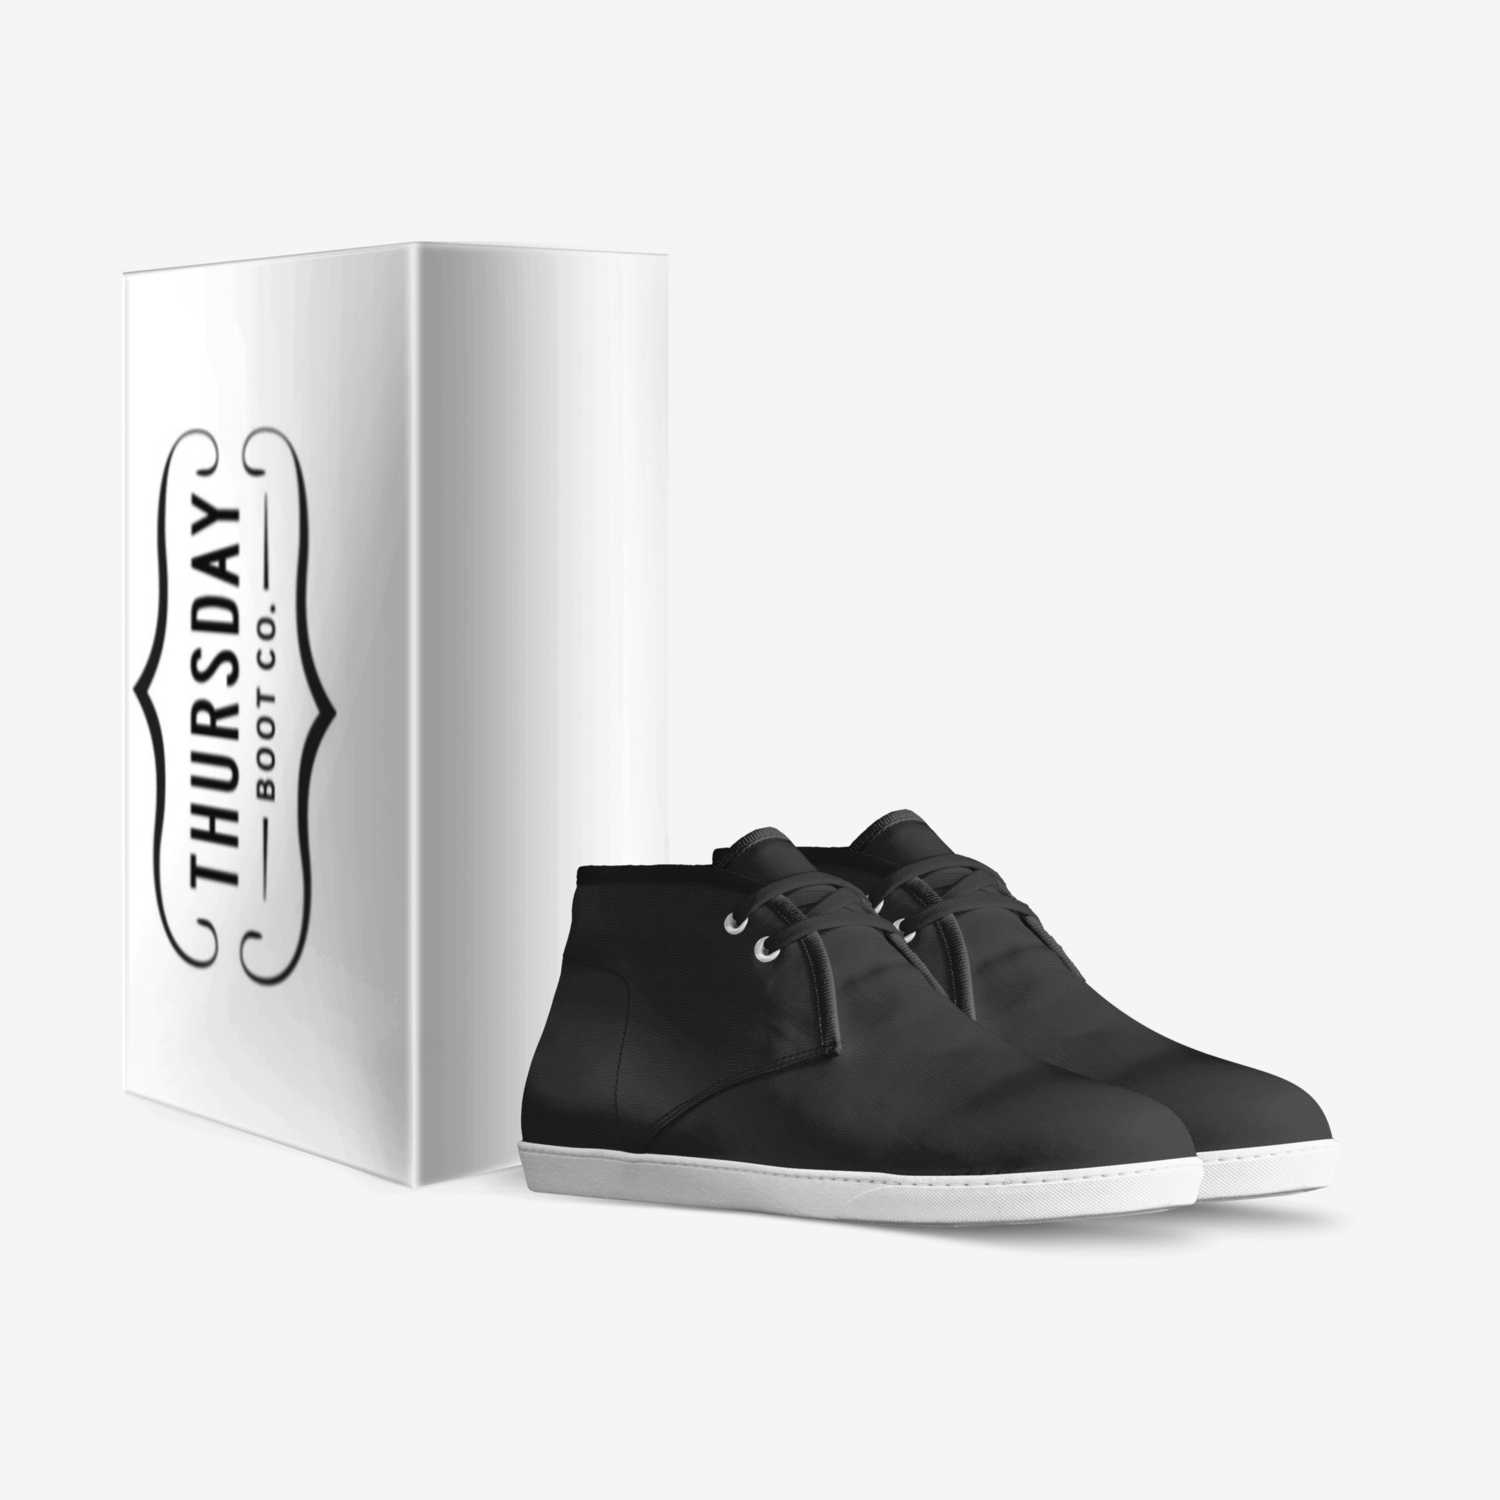 Ooooooooo custom made in Italy shoes by Kvn Elvn | Box view